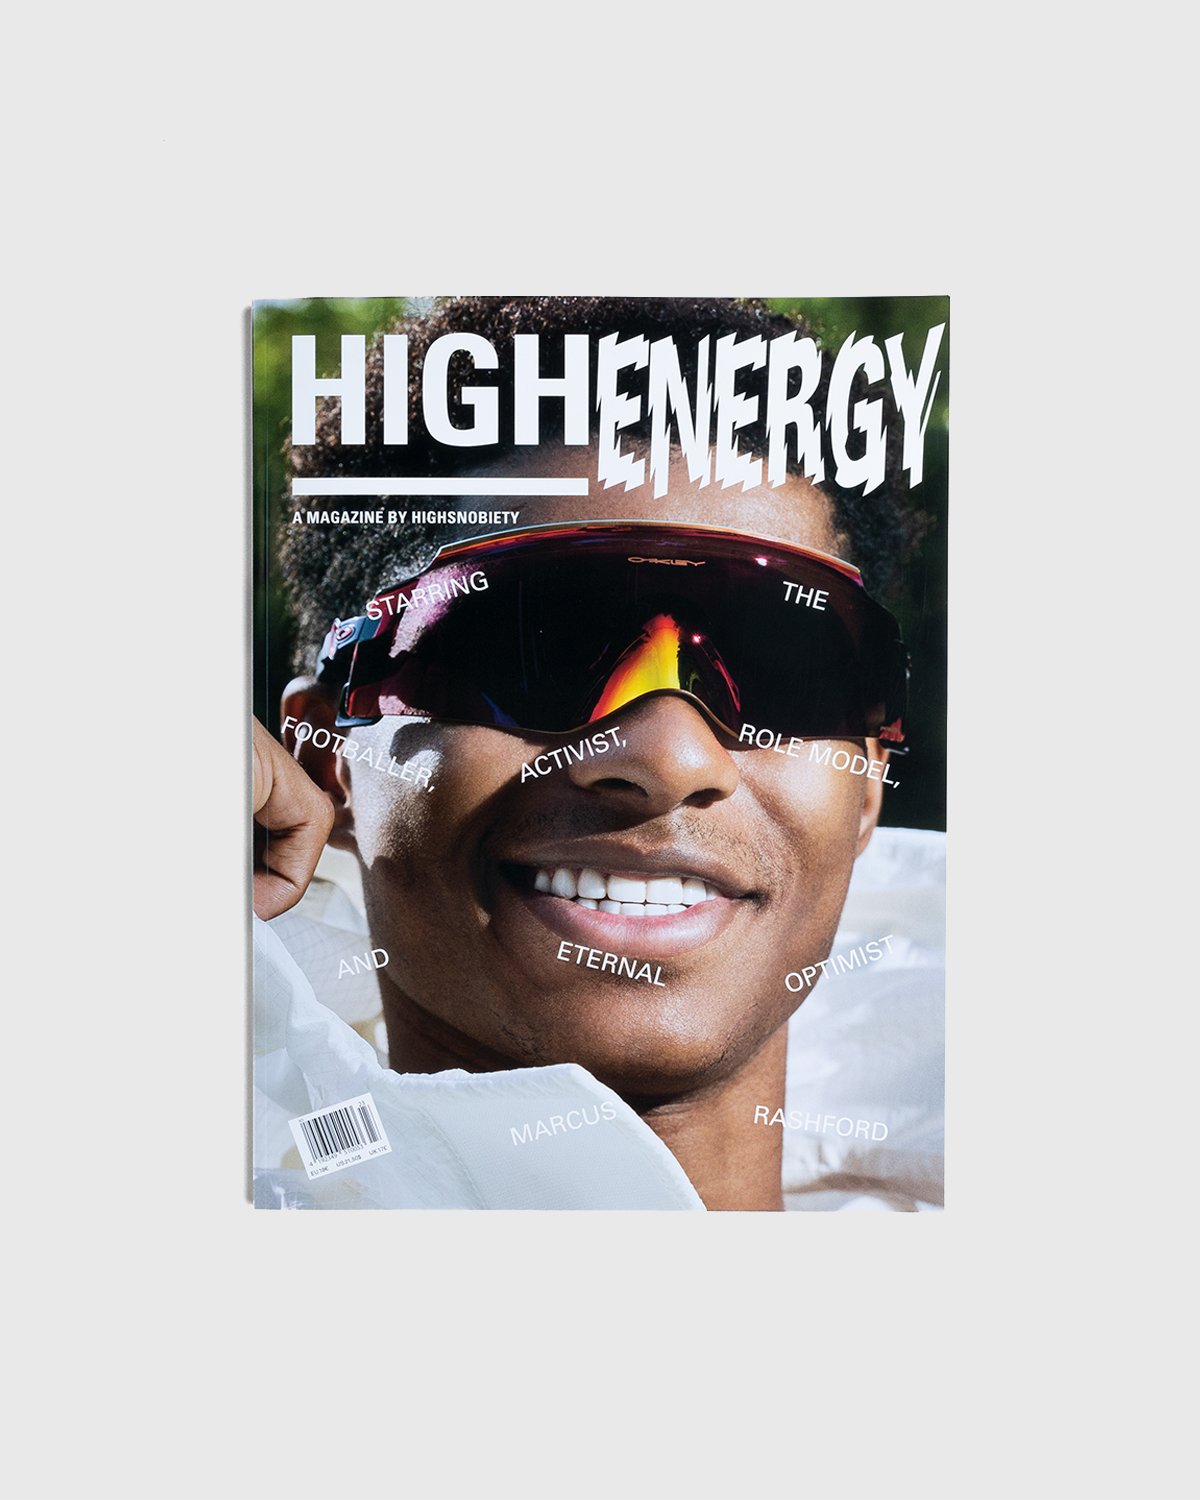 Highsnobiety - HIGHEnergy - A Magazine by Highsnobiety - Lifestyle - Multi - Image 1